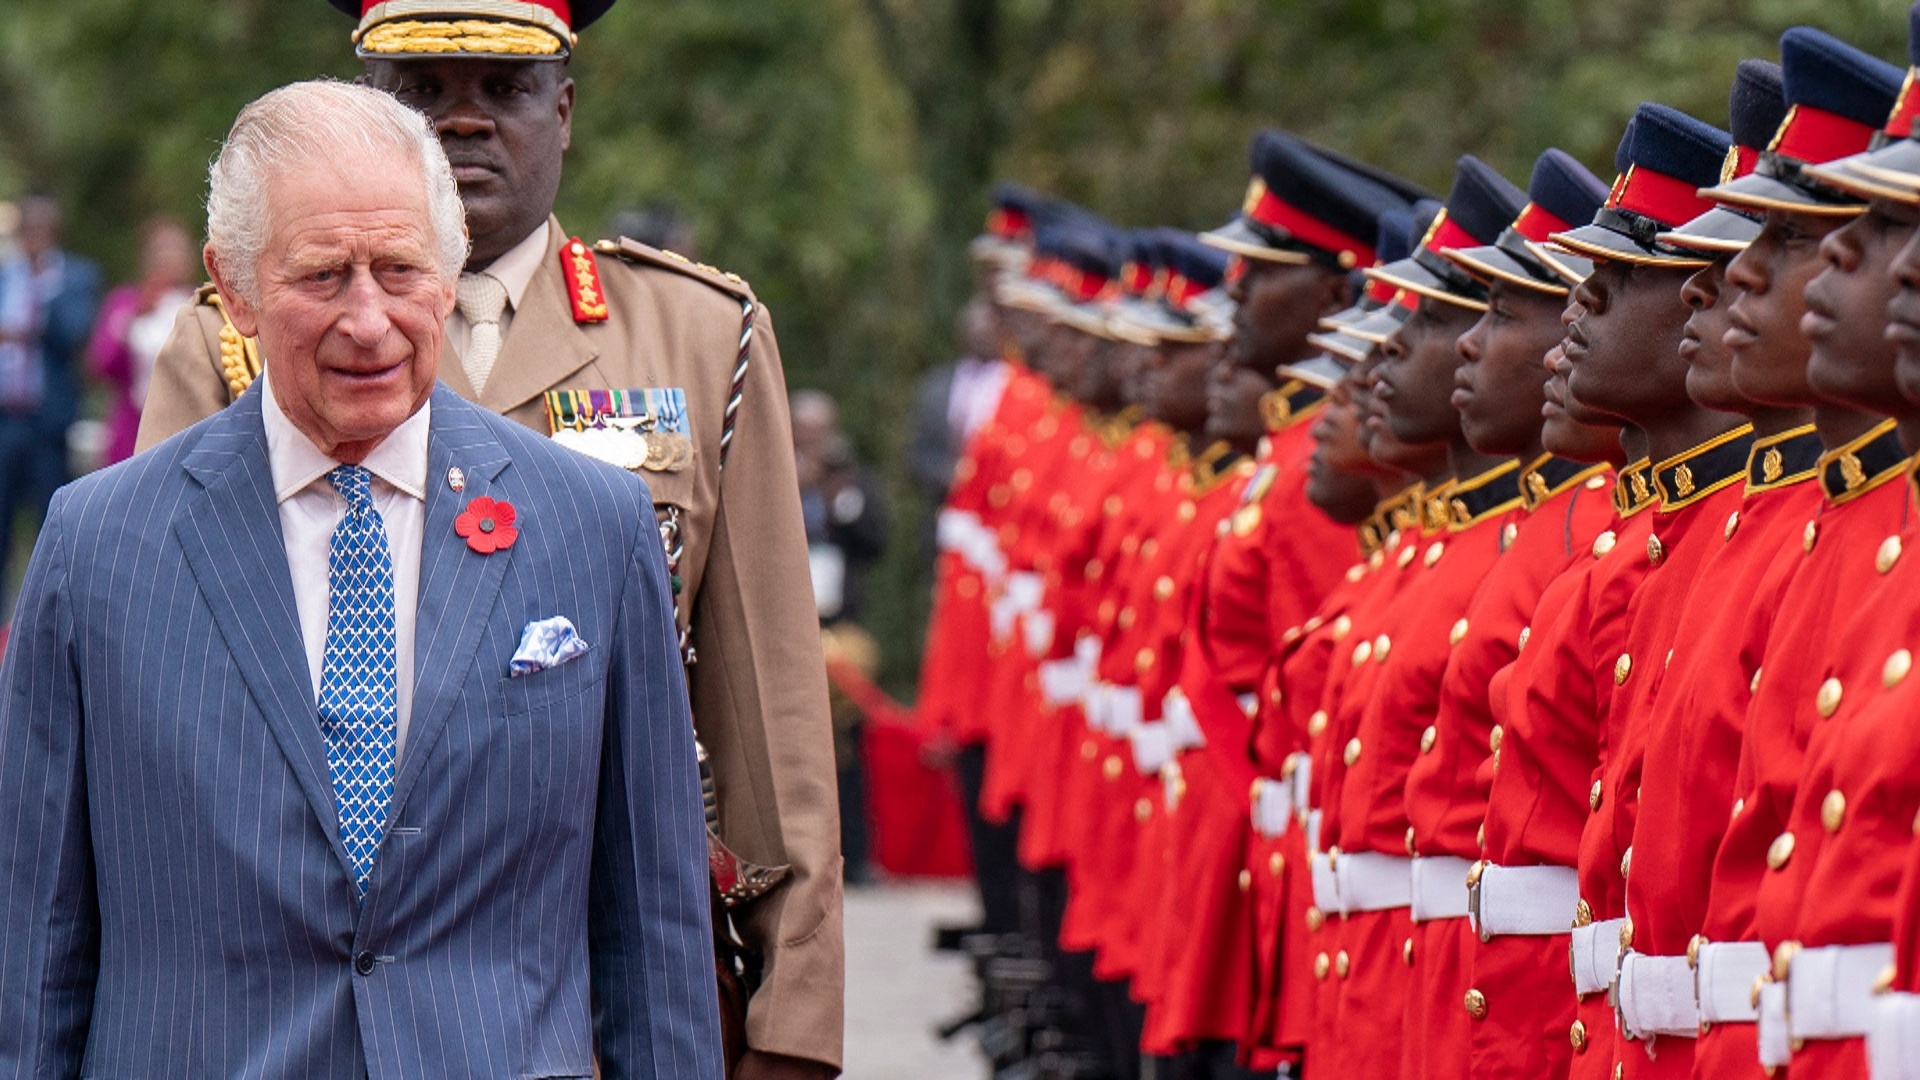 Король Чарльз III не извинился перед кенийцами